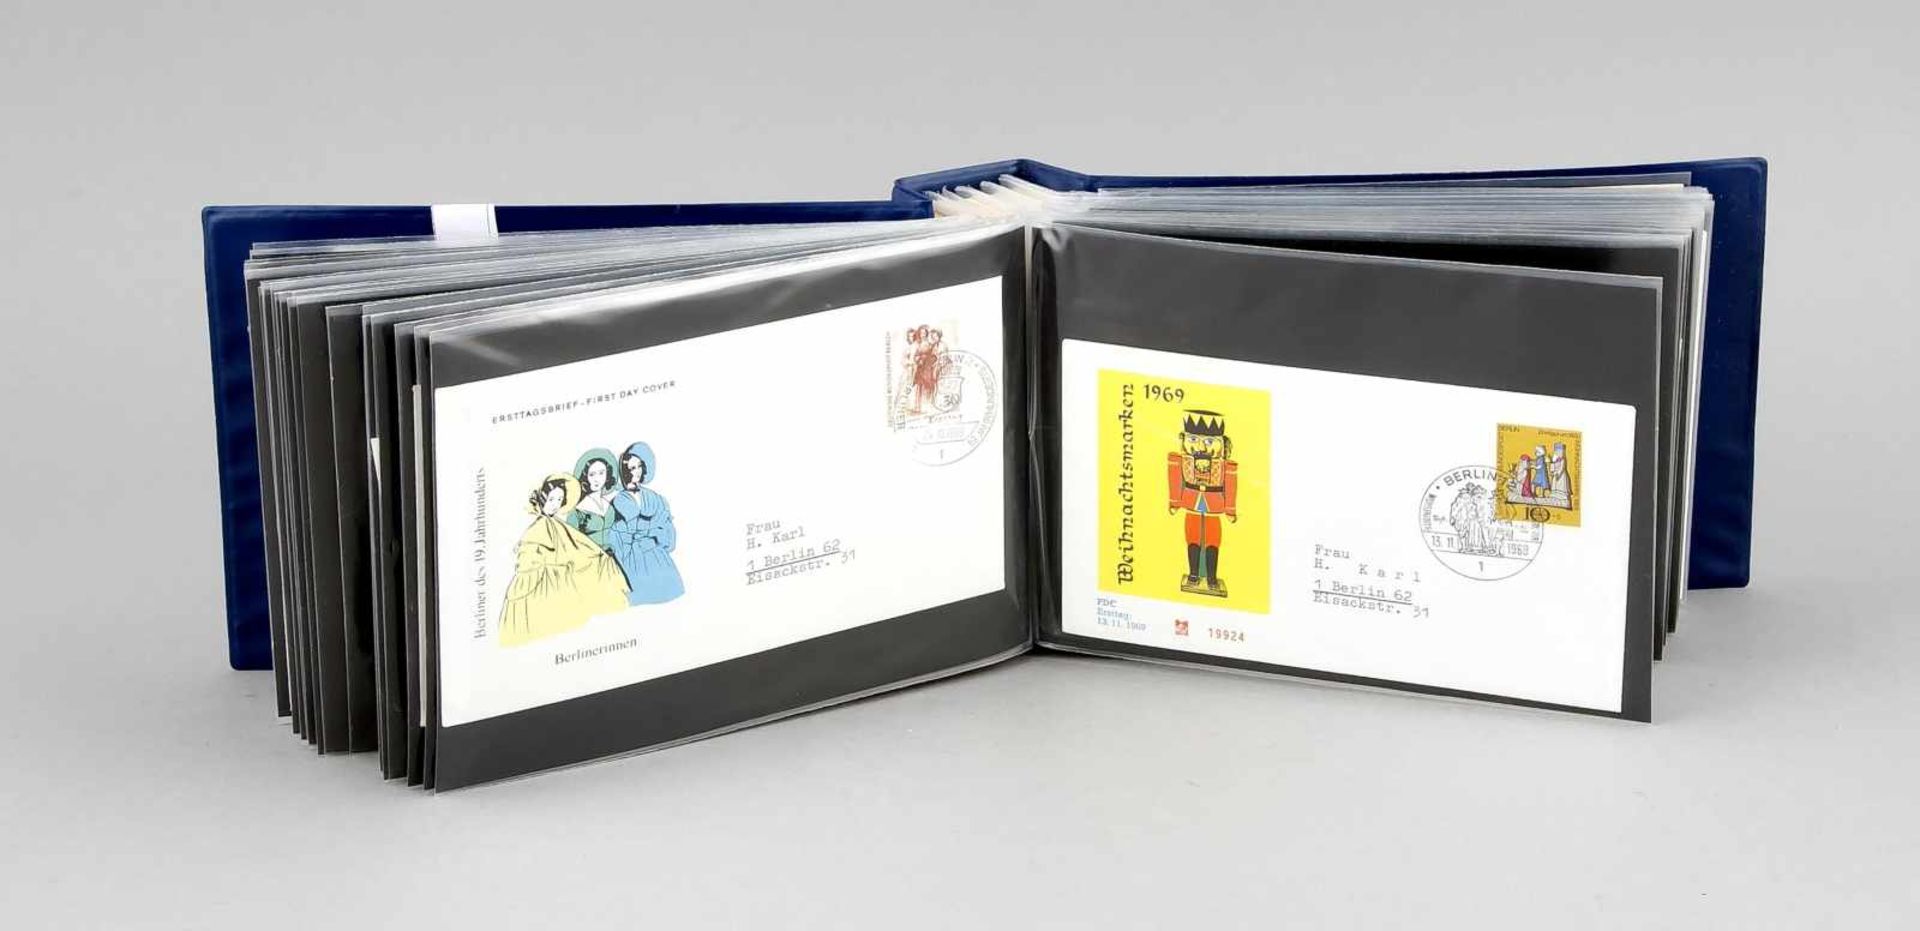 Sammlung von 100 Ersttagsbriefen, Bundesrepublik 1955-1969, in blauem Ordner, 23 x 14 x 7cmA - Image 2 of 3